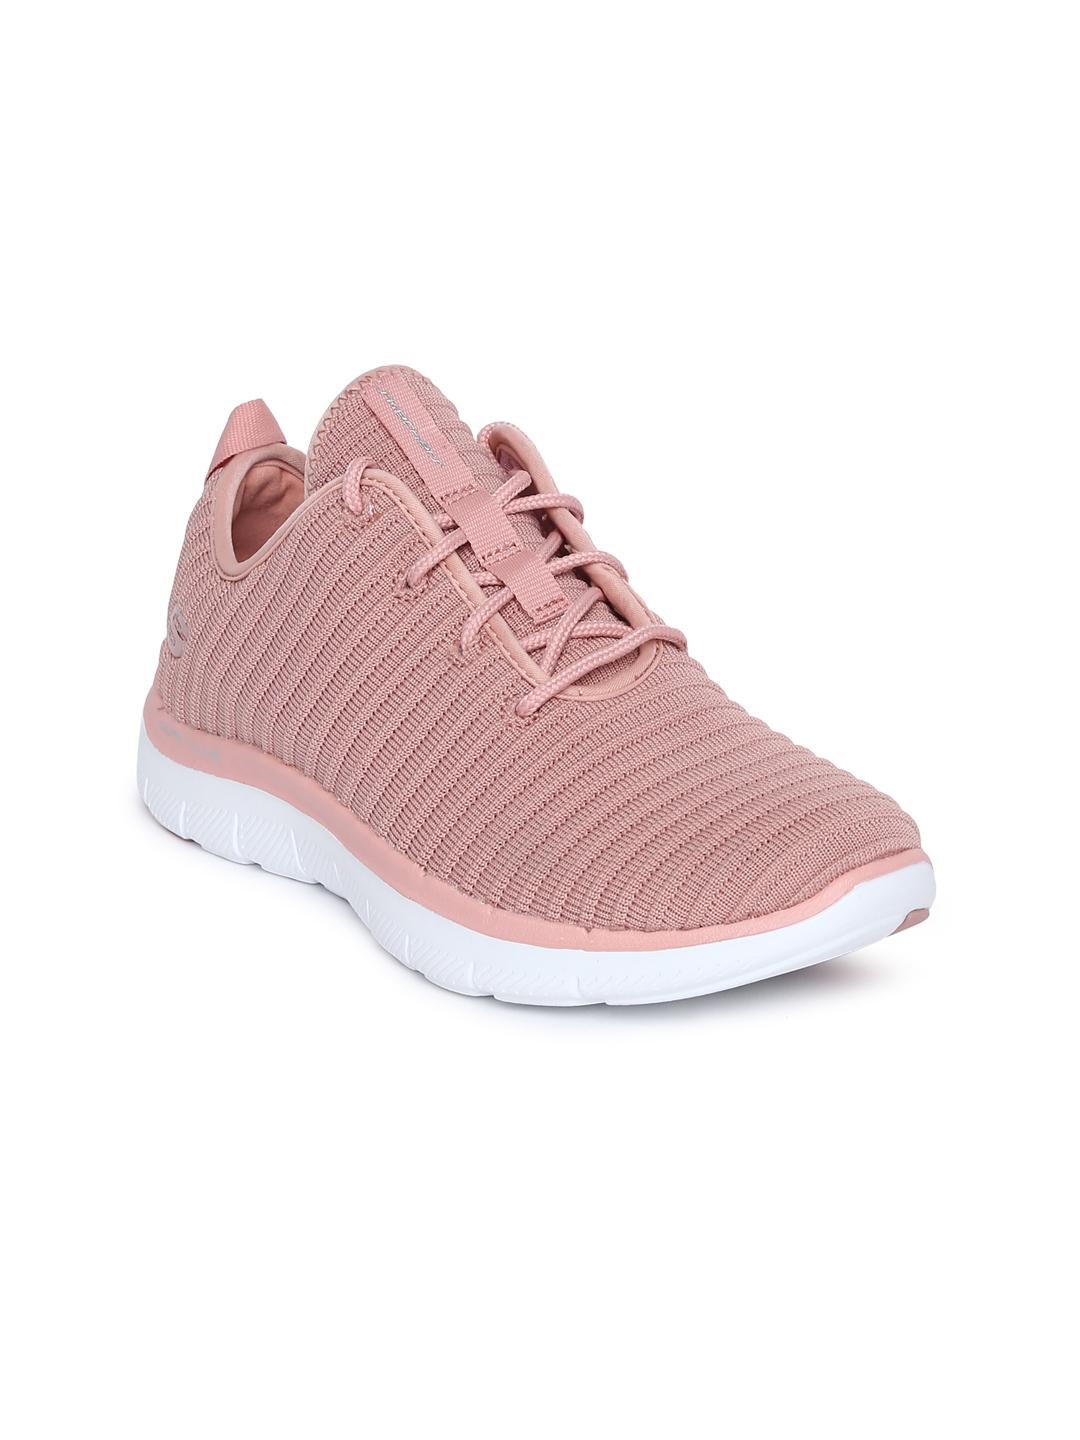 Buy Skechers Women Pink Flex Appeal 2.0 Estates Sneakers - Casual Shoes for Women | Myntra